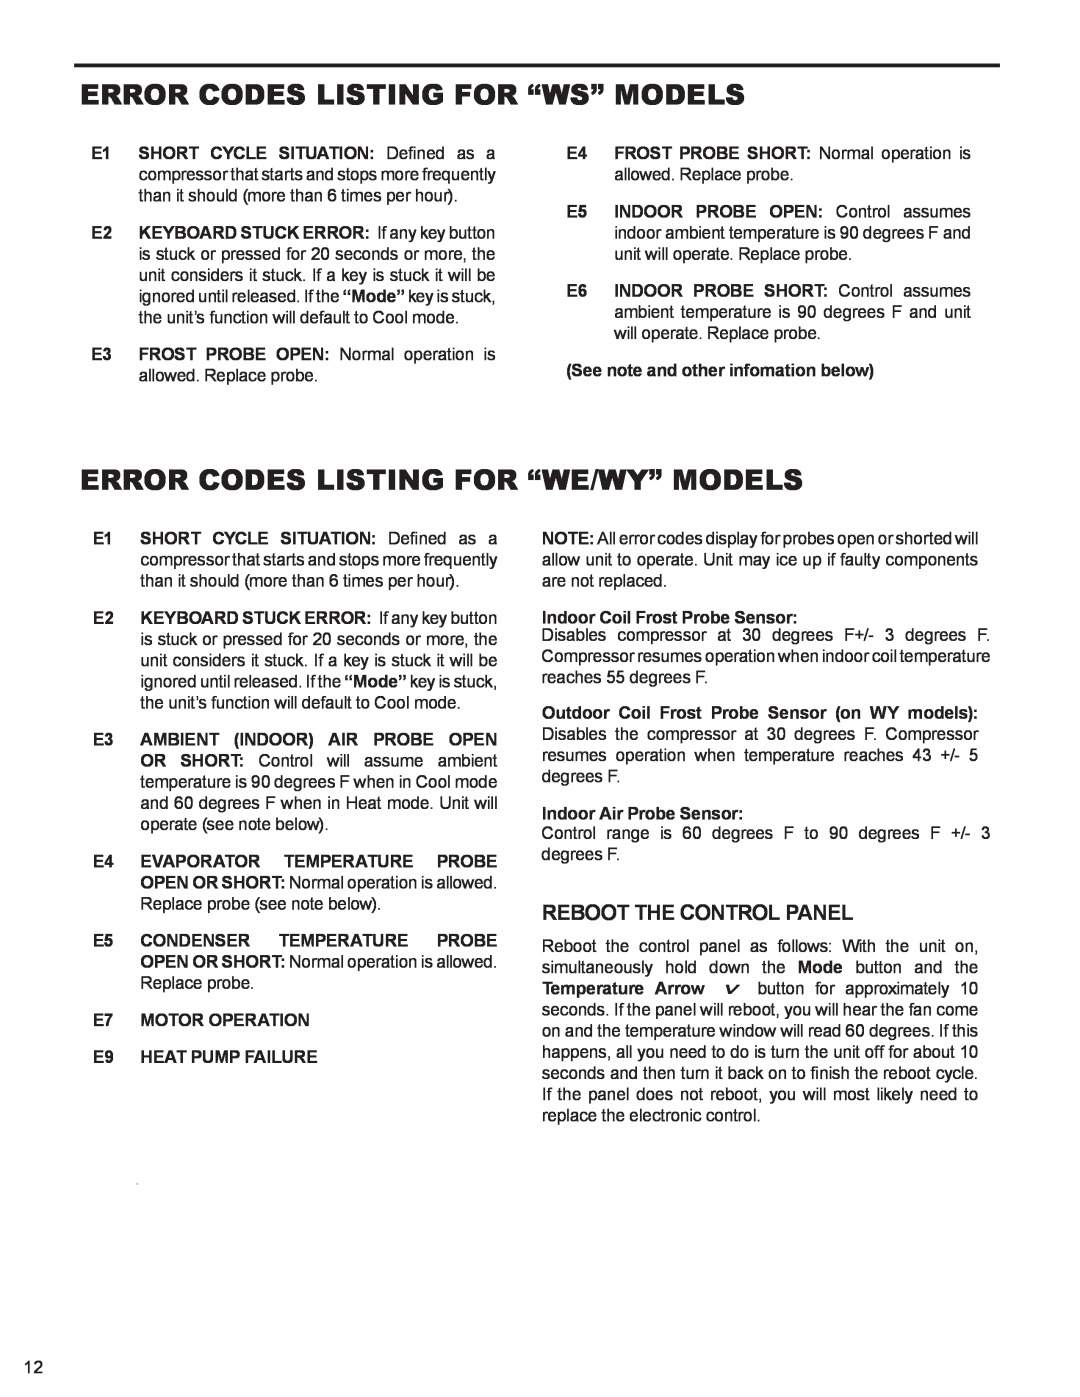 Friedrich WS10B10 Error Codes Listing For “Ws” Models, Error Codes Listing For “We/Wy” Models, Reboot The Control Panel 